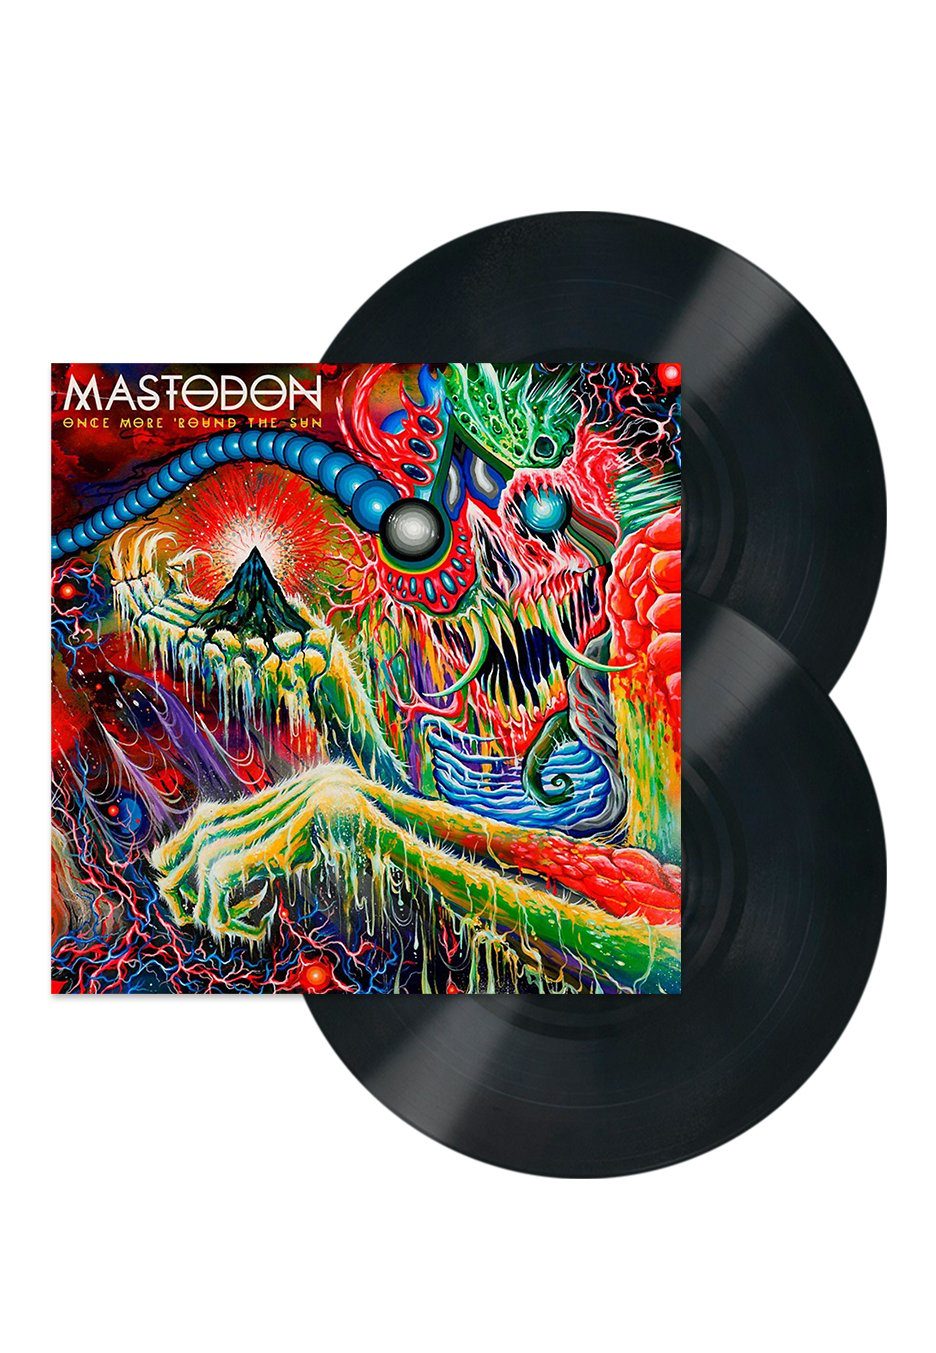 Mastodon - Once More 'Round The Sun - 2 Vinyl